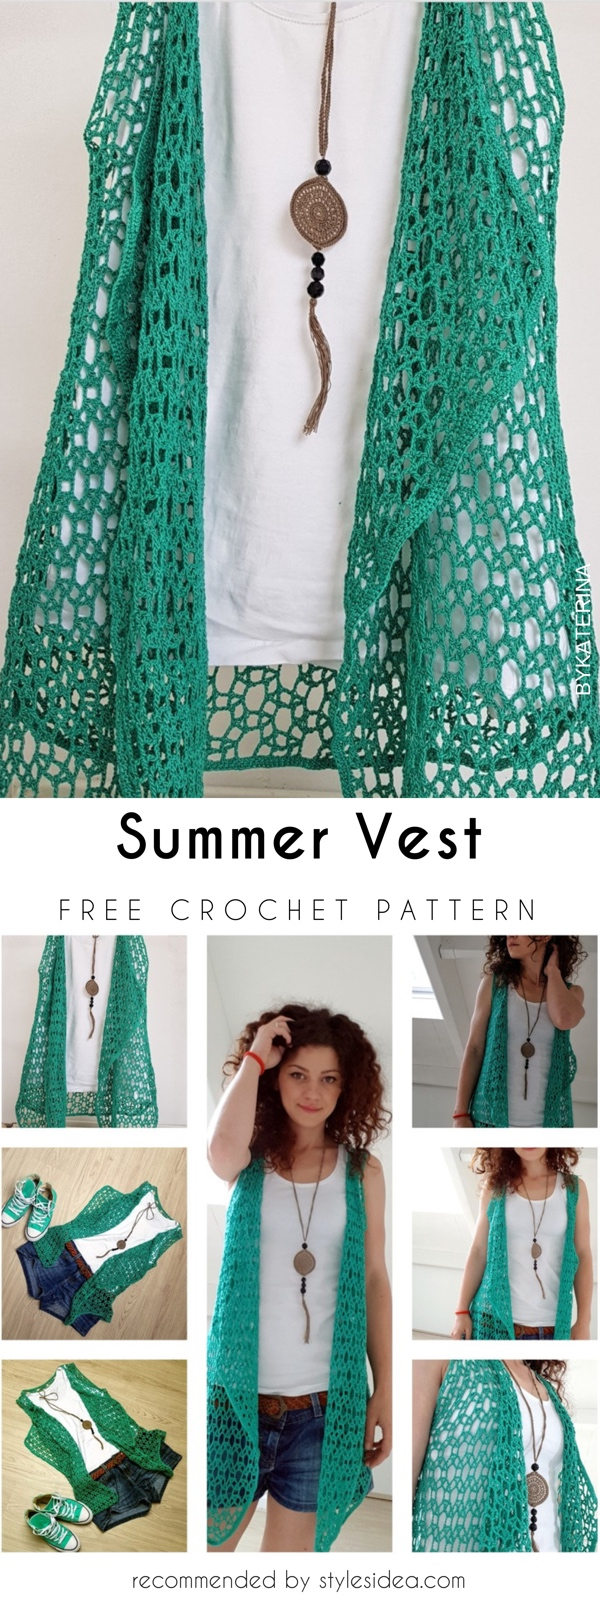 Crochet Vest Pattern Summer Vest Crochet Pattern Free Styles Idea